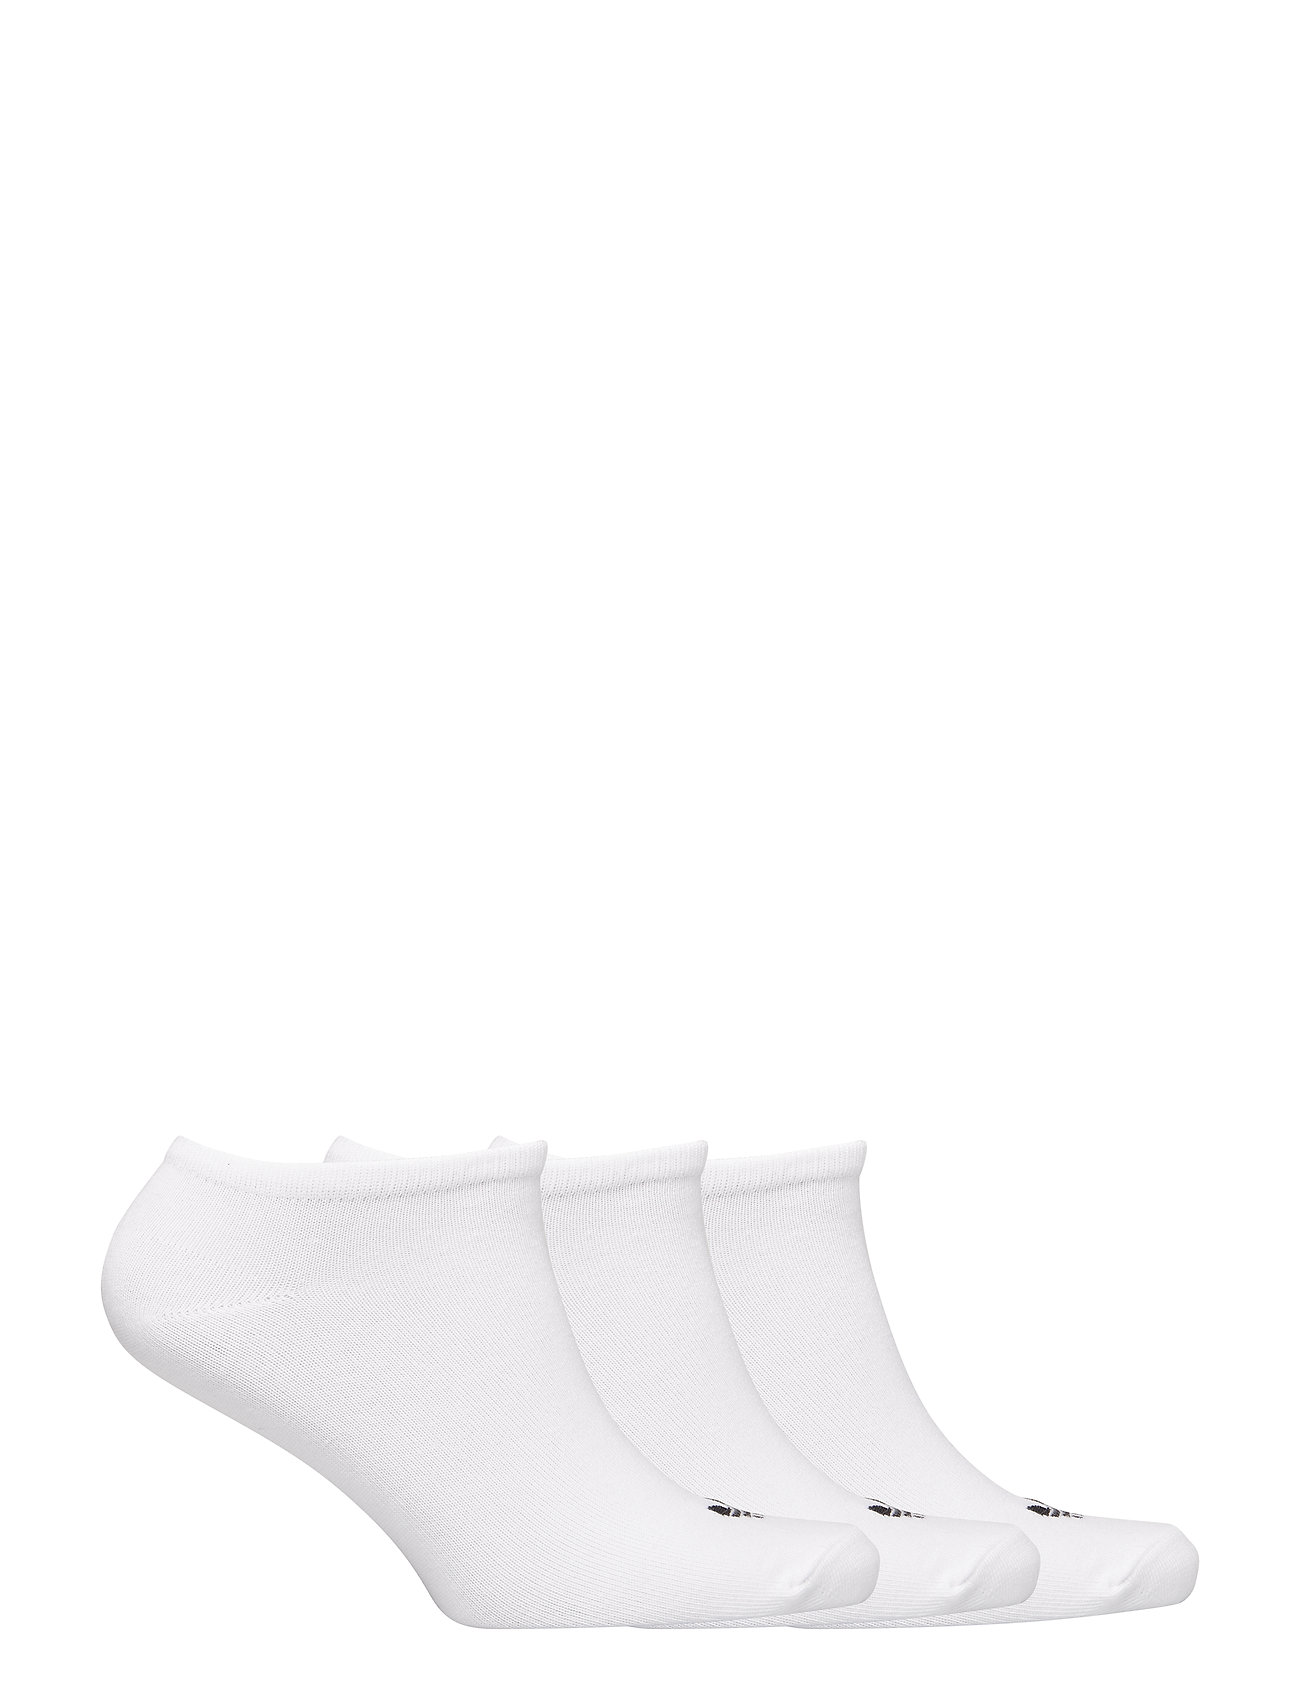 adidas Originals - TREFOIL LINER SOCK 3 PAIR PACK - ankle socks - white/white/black - 1